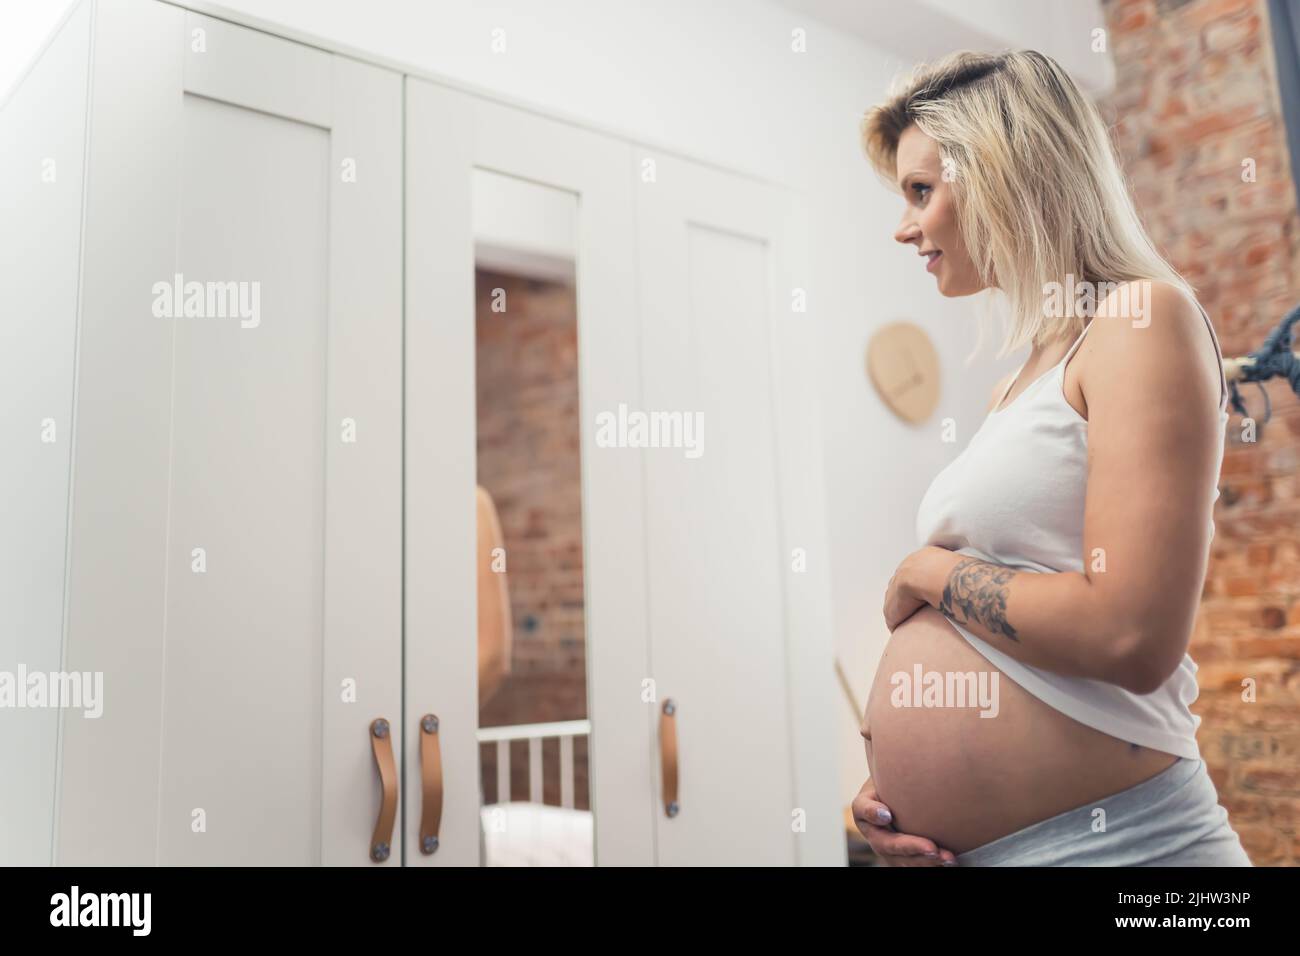 Buona gravidanza. La bionda caucasica millennial presto-essere madre in piedi davanti ad uno specchio del guardaroba e guardando il suo ventre grande di gravidanza. Foto di alta qualità Foto Stock